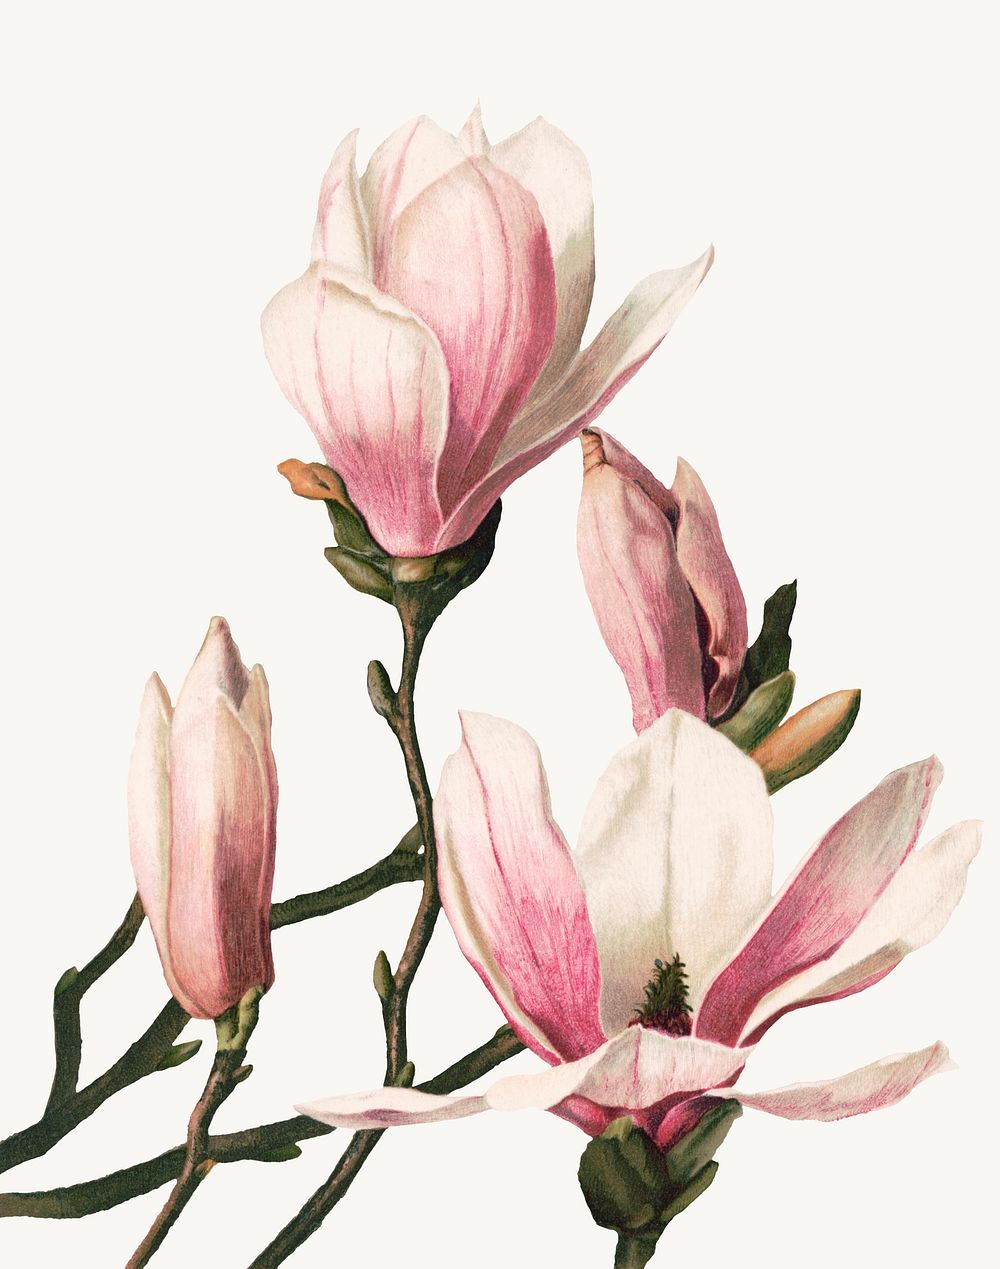 Vintage magnolia flower botanical illustration, remix from artworks by L. Prang & Co.